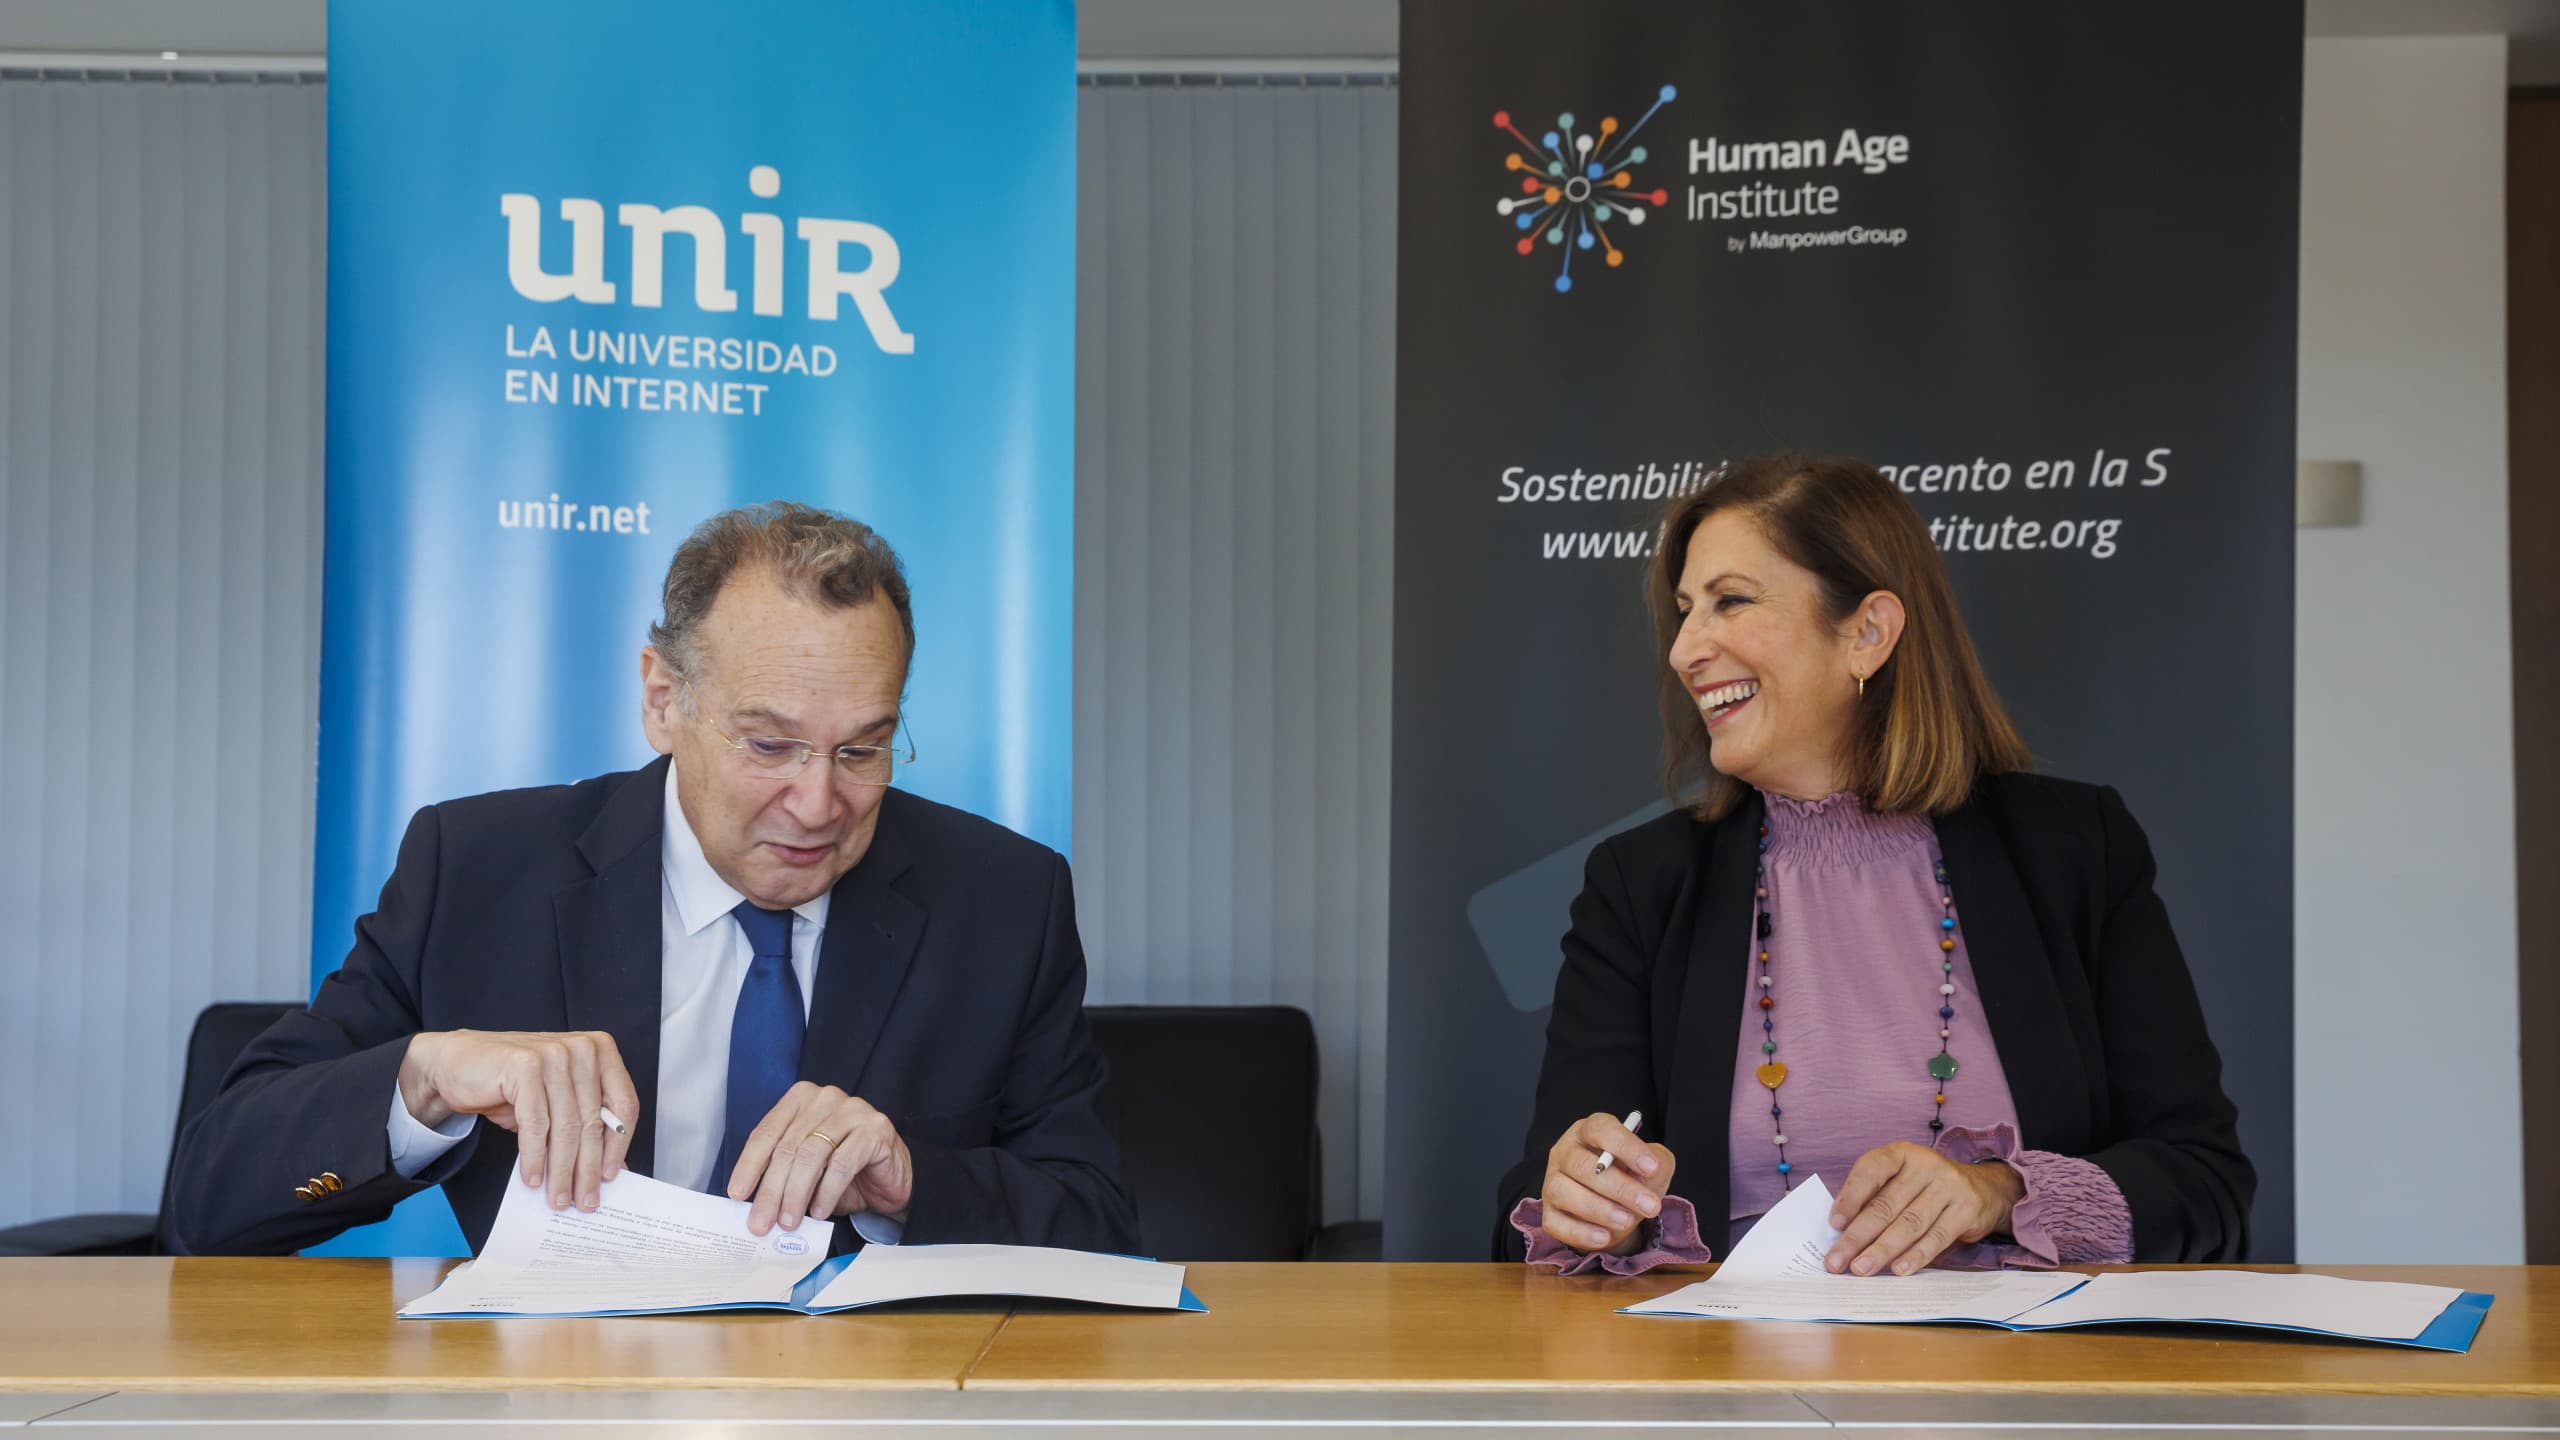 Acuerdo de colaboración entre UNIR y Human Age Institute.